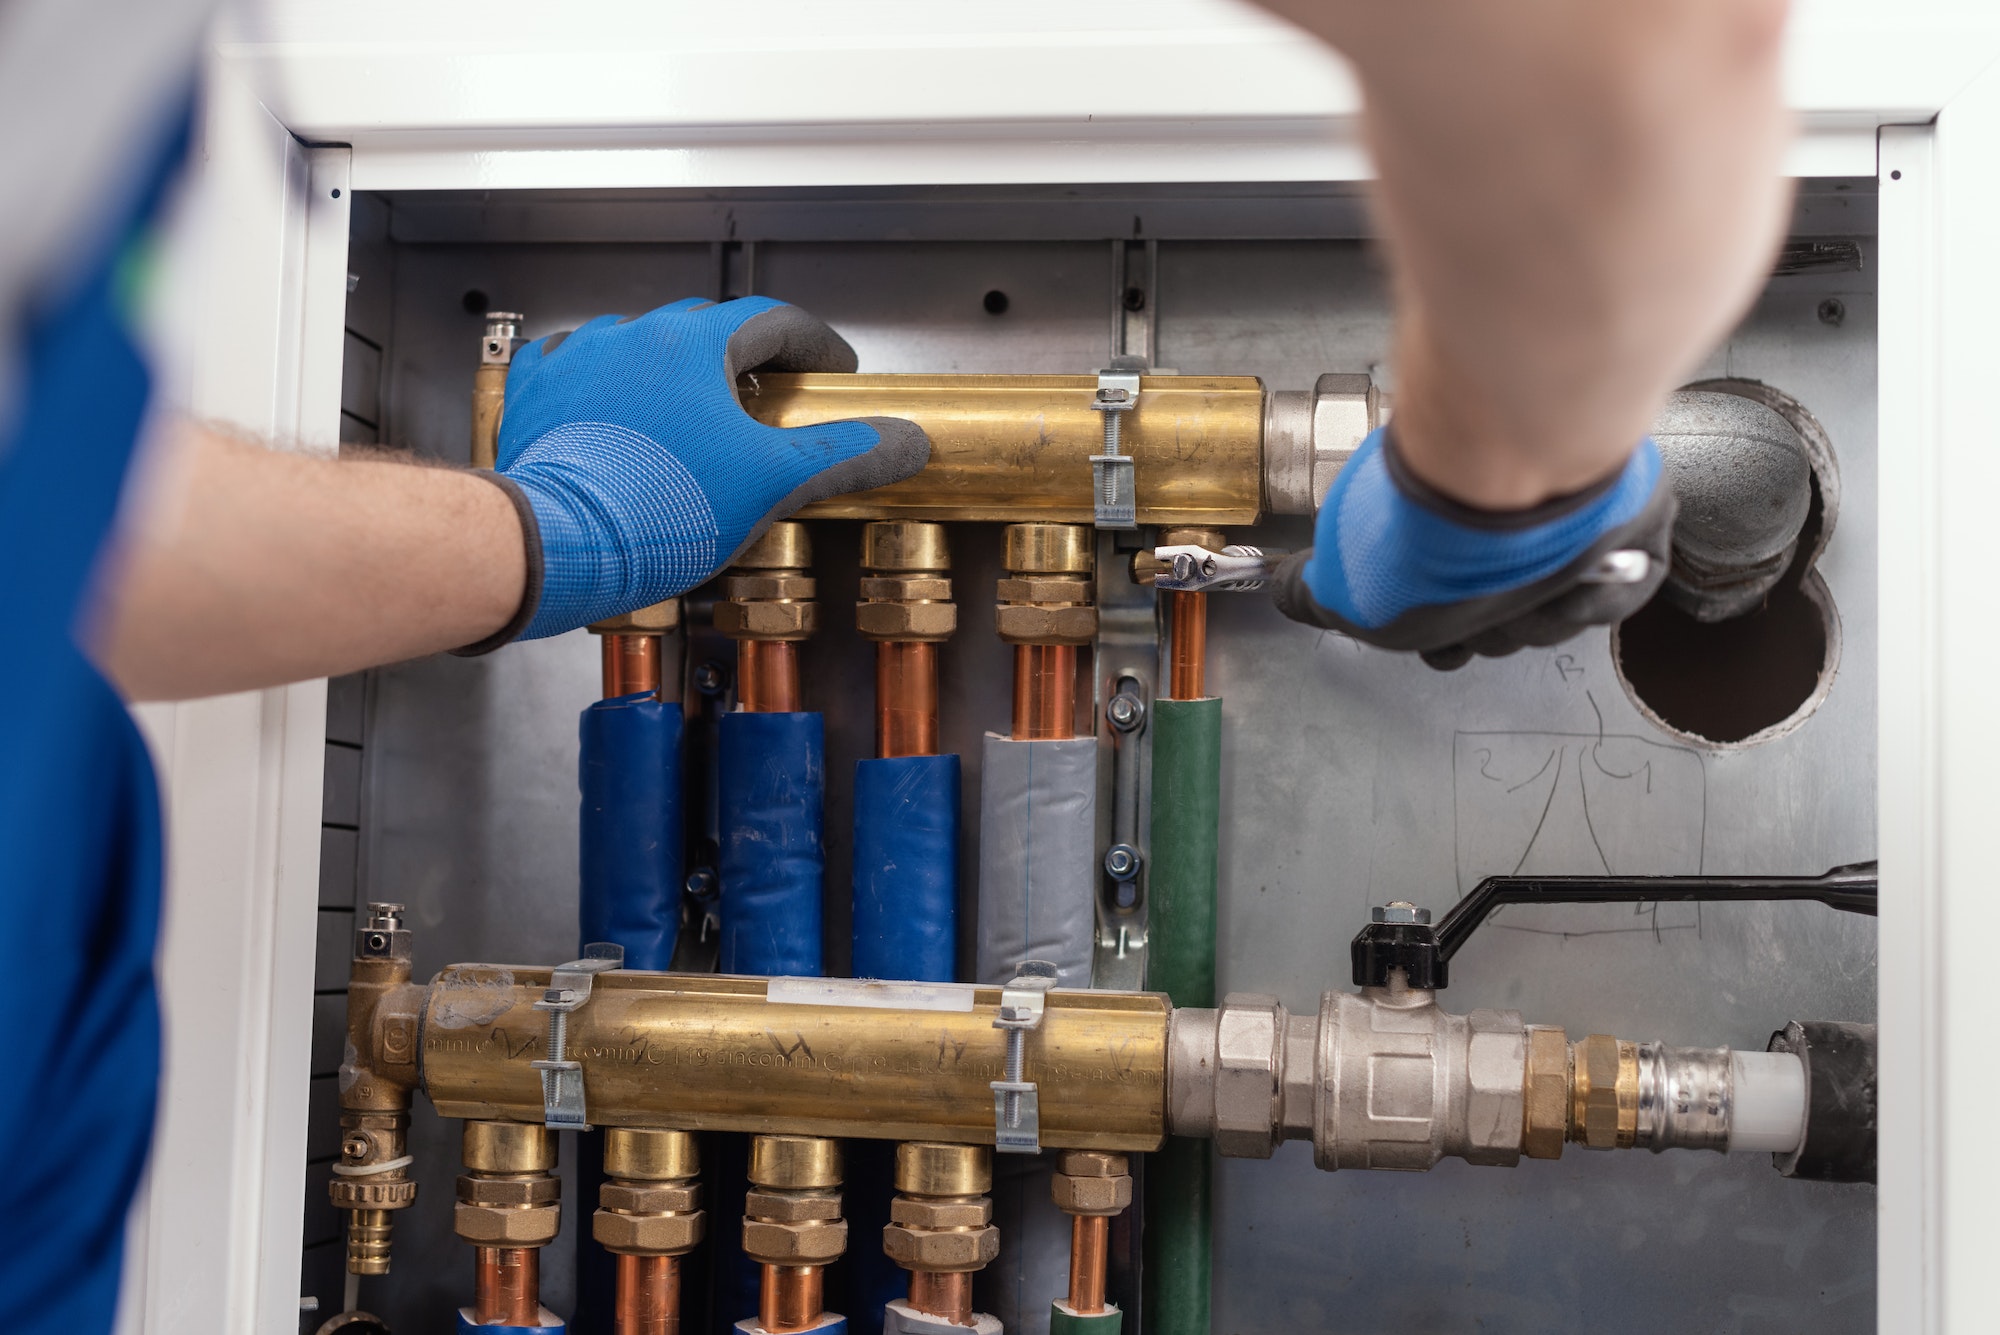 Professional plumber installing plumbing manifolds